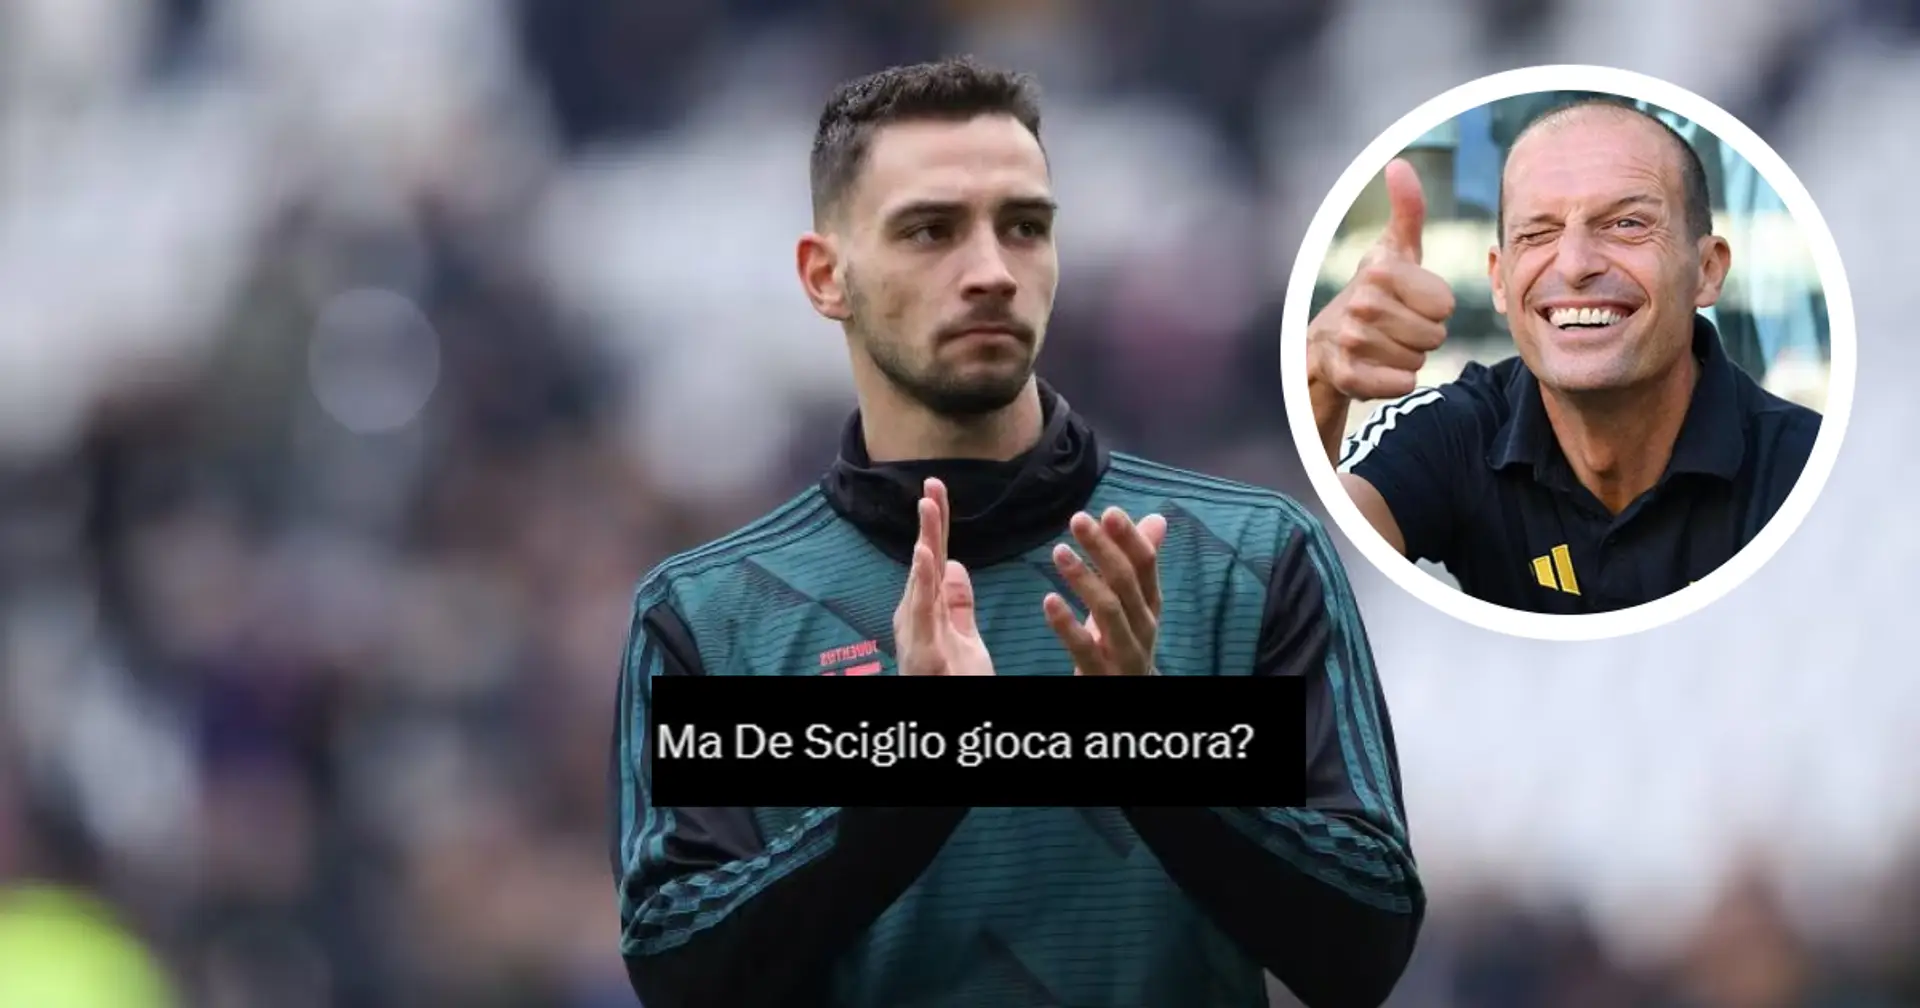 "Ma gioca ancora?": i tifosi della Juve increduli sulla scelta di Max Allegri di schierare De Sciglio contro la Lazio